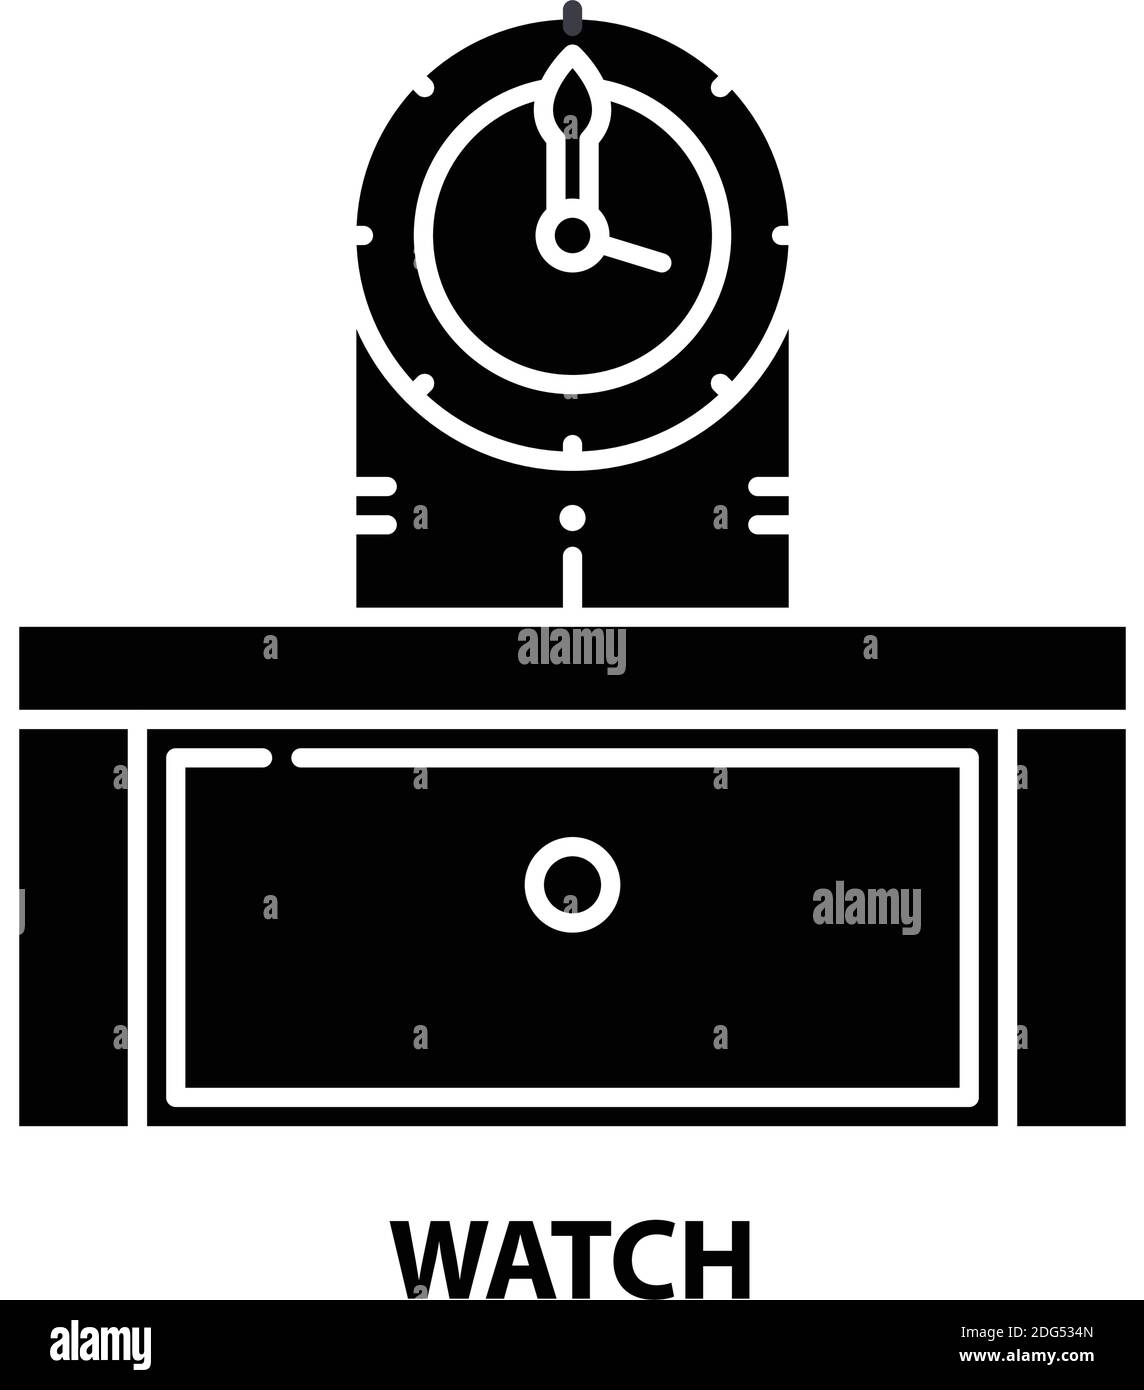 Uhrensymbol, schwarzes Vektorzeichen mit editierbaren Konturen, Konzeptdarstellung Stock Vektor